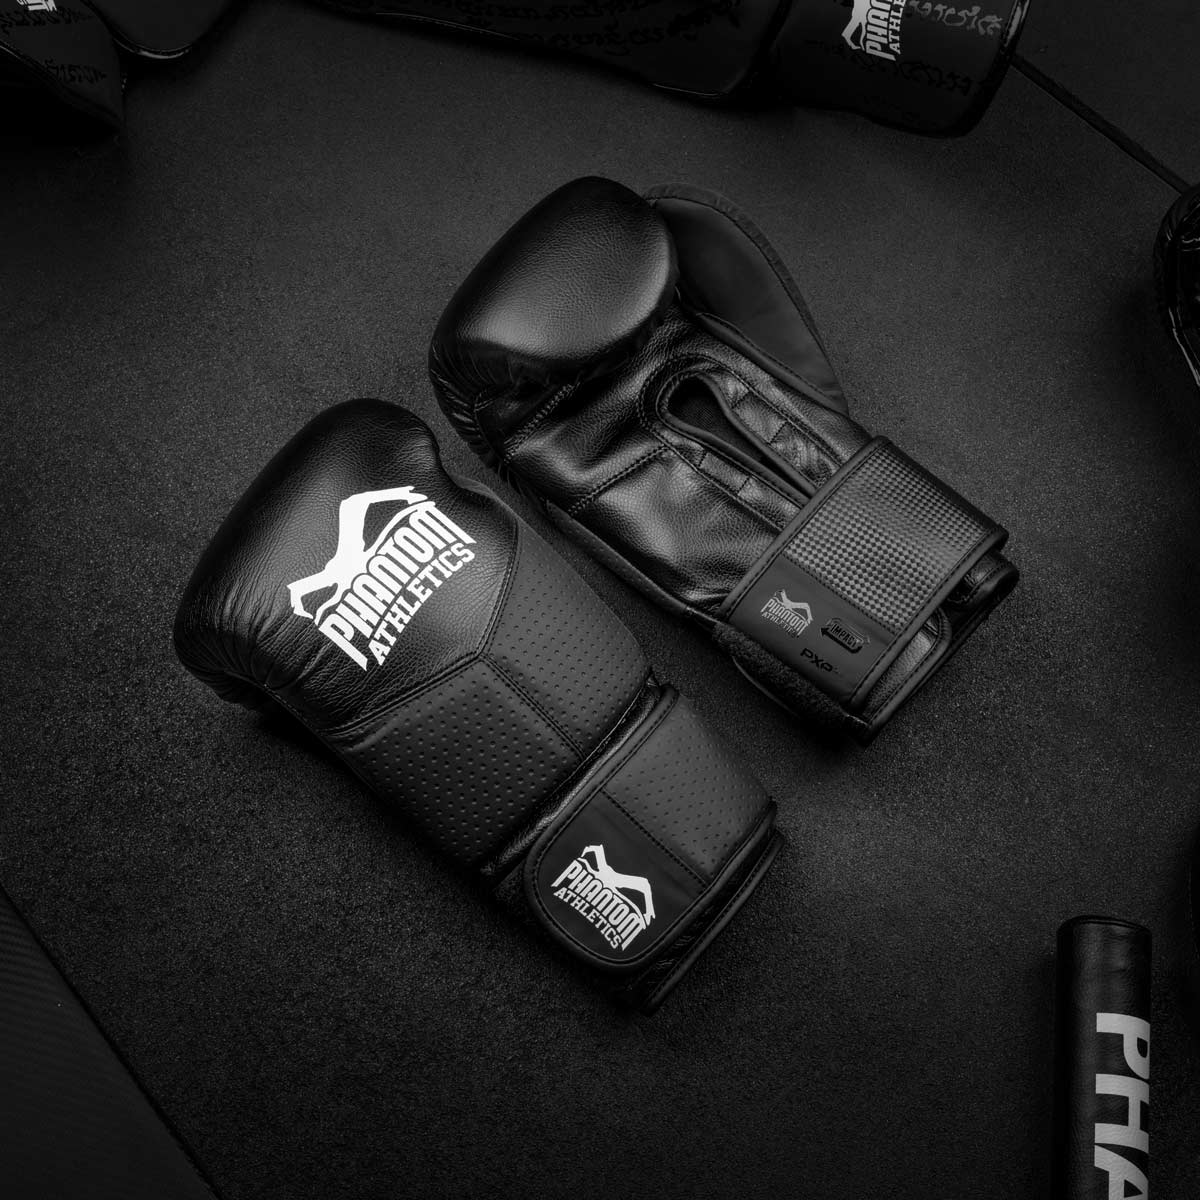 Die Phantom RIOT PRO Boxhandschuhe. Ideal für dein Kampfsport Training und Wettkämpfe. Perfekte Passform und überragende Qualität für Training und Sparring. Überragendes Design und ein cleaner Look.